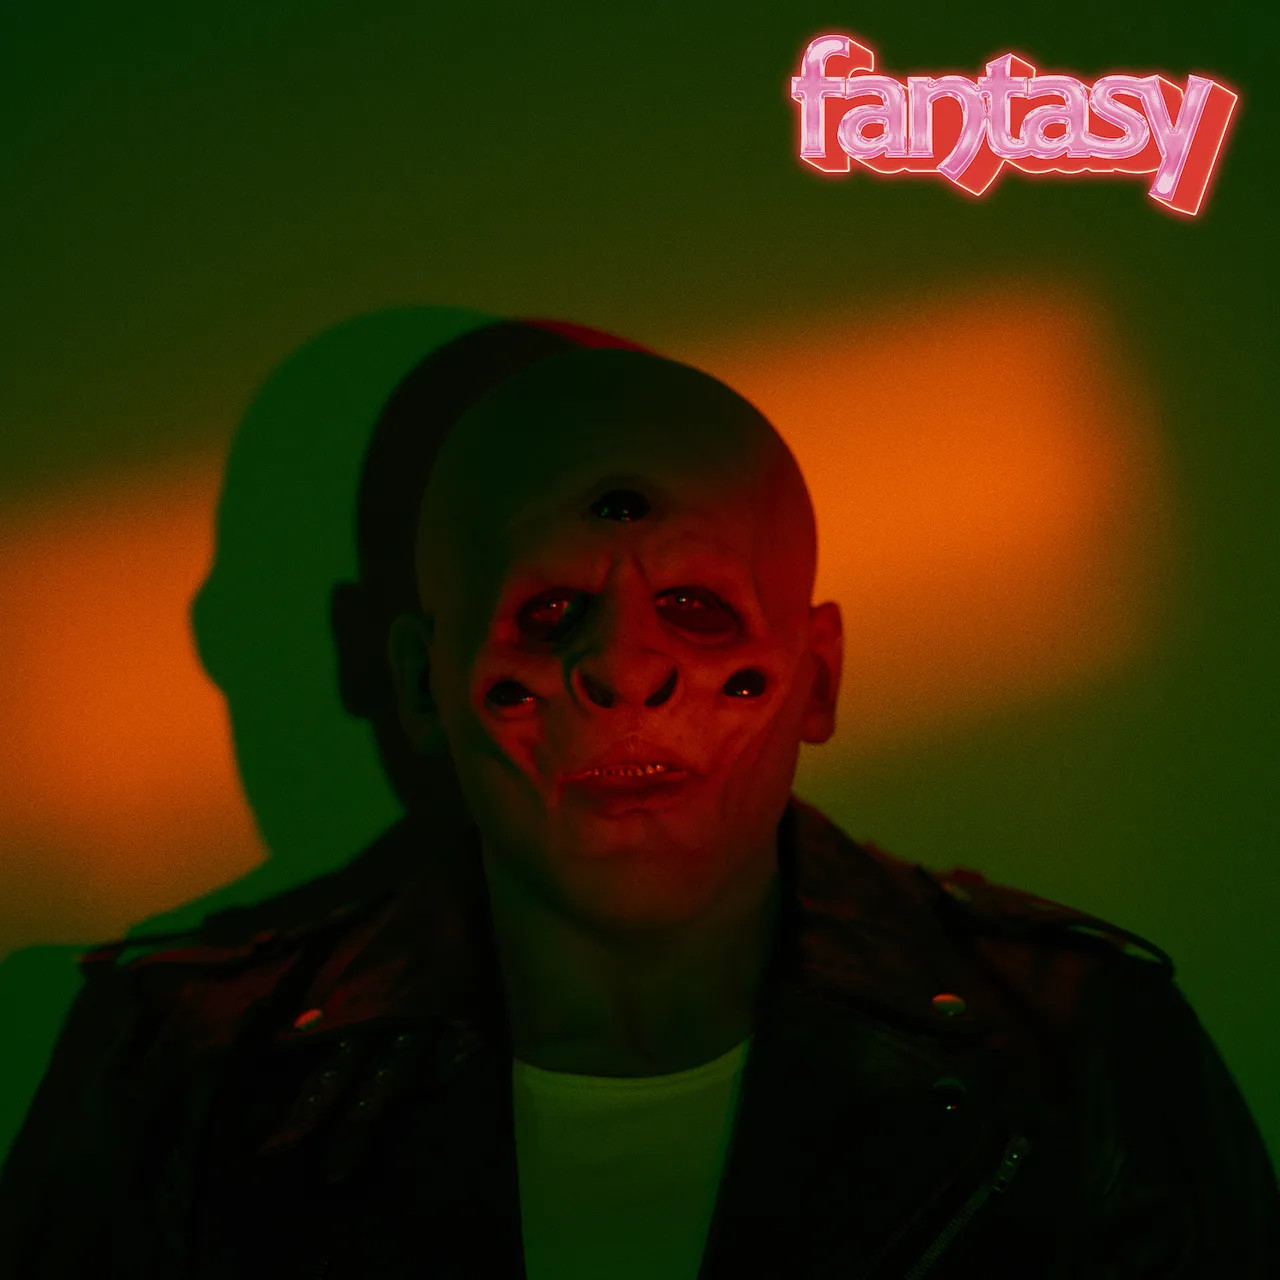 Occult Symbolism in M83’s New Album “Fantasy”